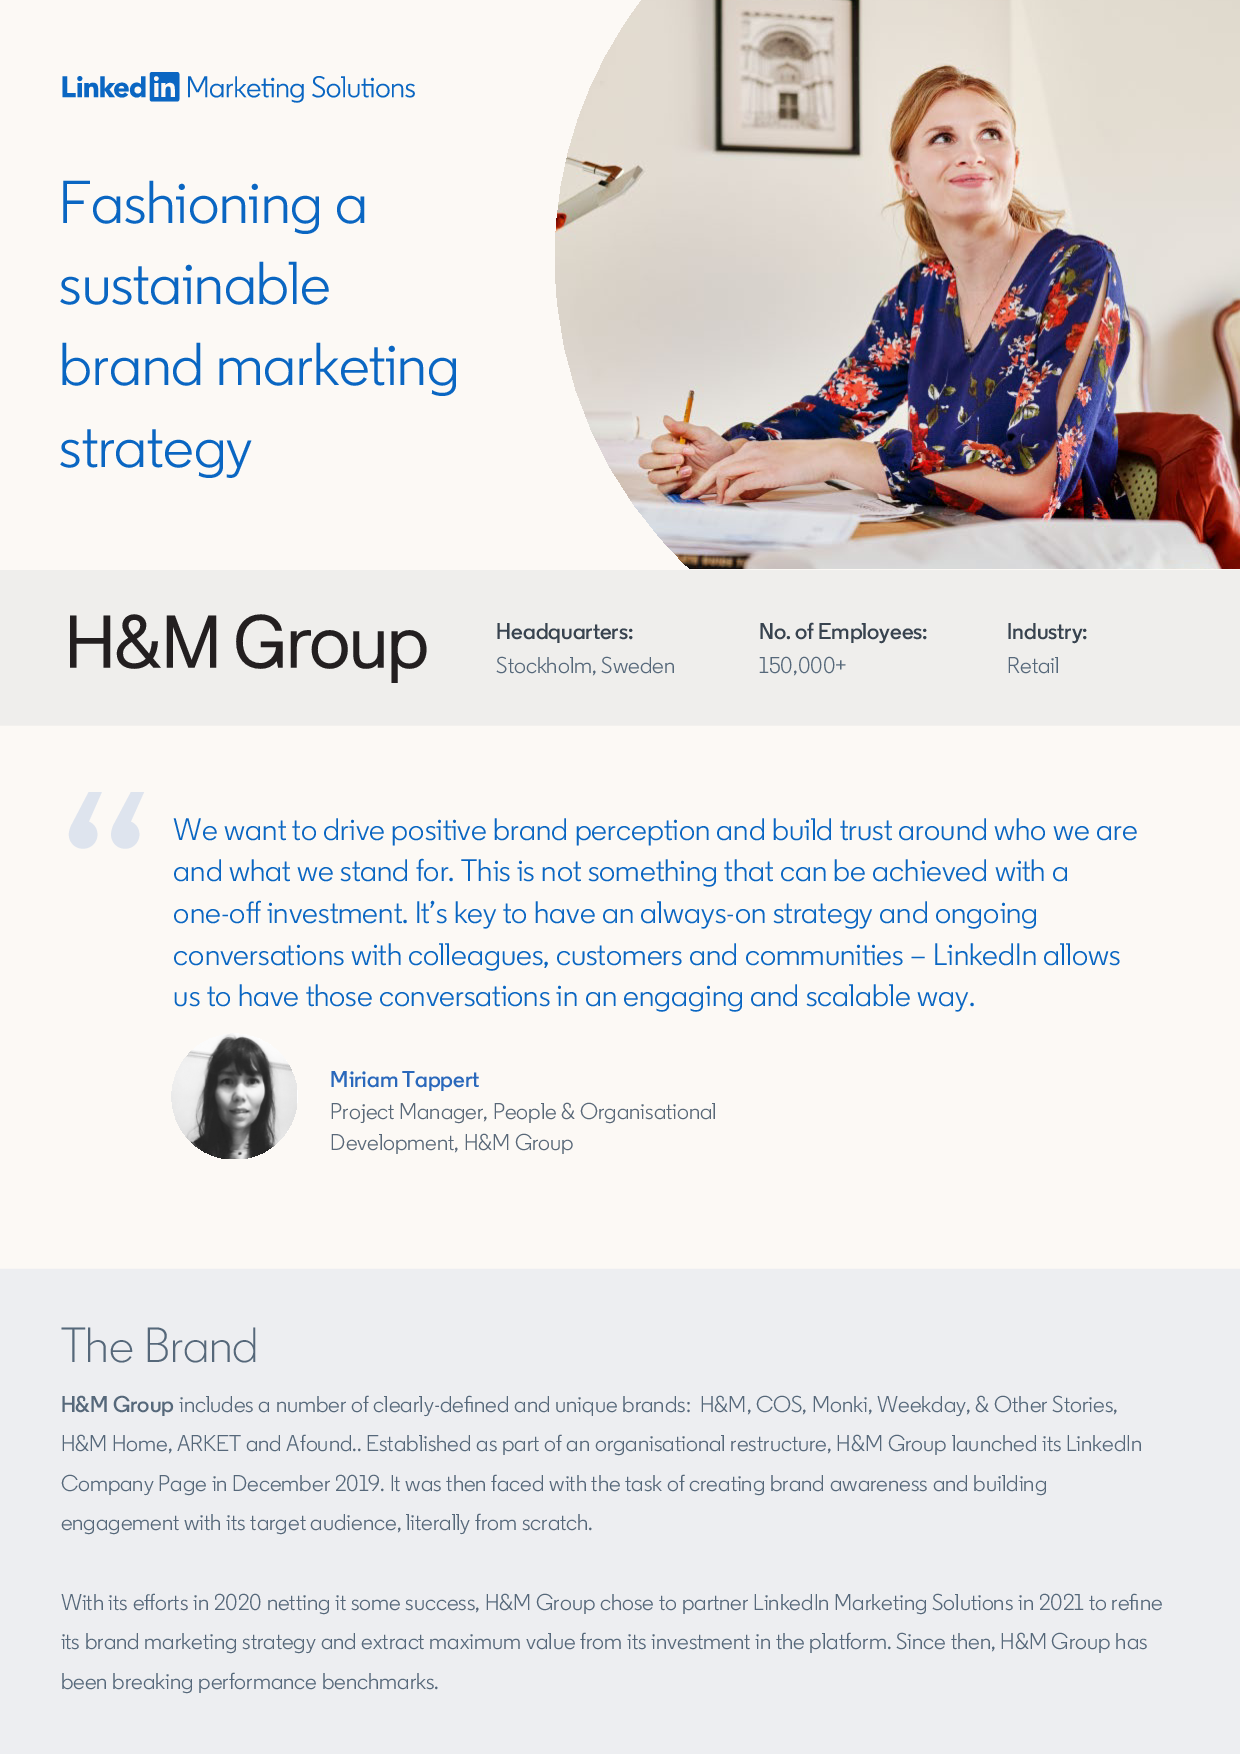 h&m case study pdf